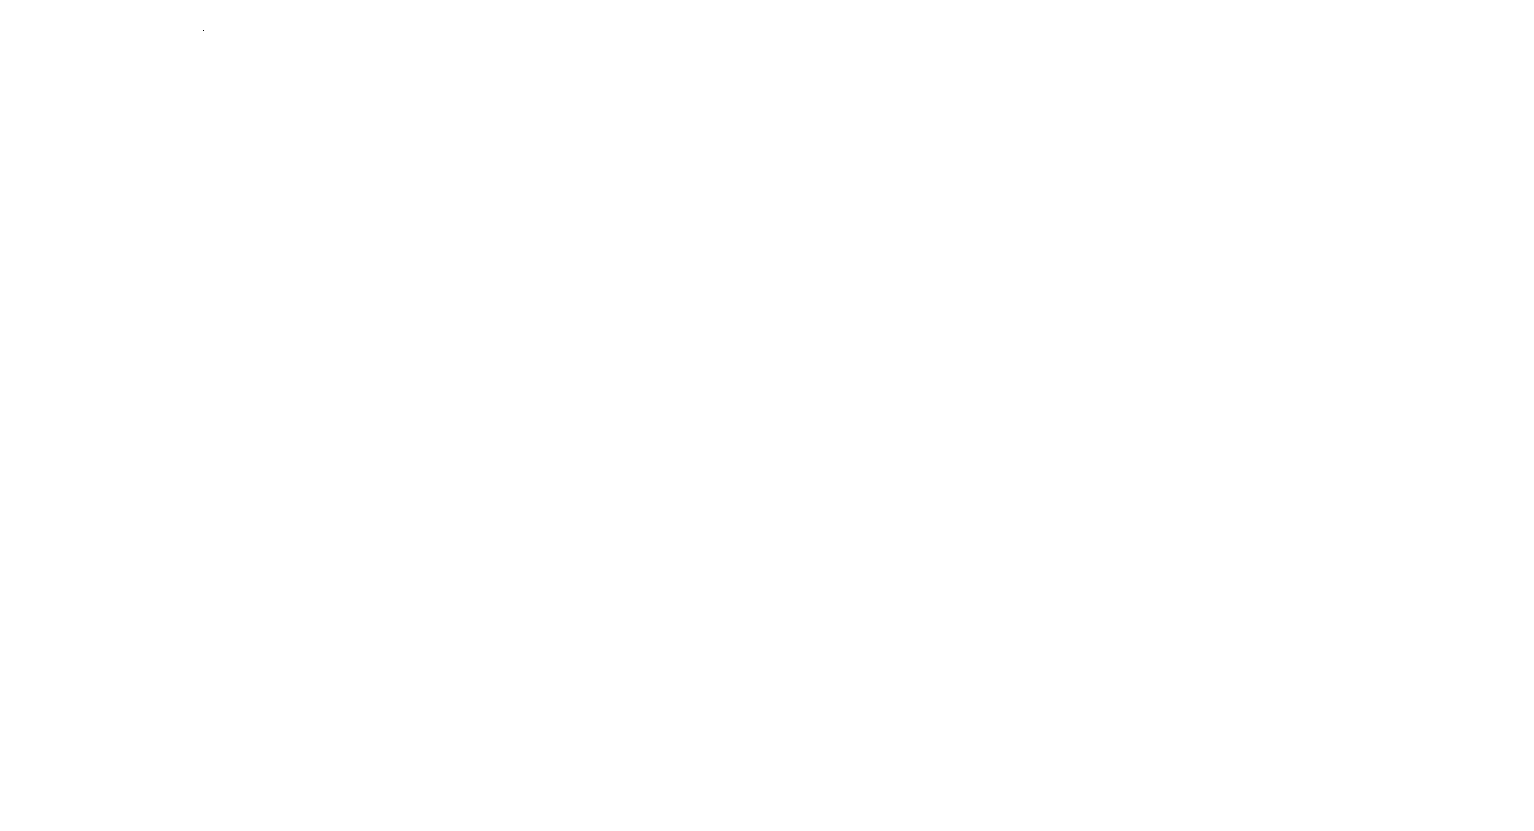 Автомобиль Toyota Celica GT. 2002 г.в., г/н К132РО35, цвет кузова – белый, номер кузова ZZT2310007255.Собственник: Алибердов А.Ю.Место нахождения имущества: Вологодская область, Вологда, Пошехонское шоссе, д. 8а. Основание реализации имущества: Постановление судебного пристава-исполнителя о передаче арестованного имущества на торги Собственник имущества: Алибердов А.Ю. Порядок ознакомления с имуществом: Ознакомление с дополнительной информацией о предмете аукциона и иным вопросам осуществляется  по рабочим дням с 10:00 до 12:00 и с 15:00 до 17.00 с момента публикации информационного сообщения до даты окончания подачи заявок Обременения реализуемого имущества: С обременением имущества можно ознакомиться в файле Информационное сообщение Условия договора, заключаемого по результатам торгов: Продавец заключает договор купли-продажи имущества с лицом, выигравшим публичные торги, путем подписания договора при помощи ЭЦП в электронной форме и на бумажном носителе по адресу нахождения продавца: г. Вологда, ул. Пушкинская, д.25, каб.506 Порядок и сроки уплаты покупной цены по итогам проведения торгов: Лицо, выигравшее торги, должно внести в течение пяти дней после их окончания сумму, за которую данным лицом куплено арестованное имущество (покупную цену), за вычетом ранее внесенного задатка на счет продавца.    Реквизиты для внесения оставшейся суммы: Получатель: УФК по Вологодской области (ТУ Росимущества в Вологодской области л/с 05301A27050) ИНН 3525237735, КПП 352501001 р/с 03212643000000013000 ОТДЕЛЕНИЕ ВОЛОГДА//УФК по Вологодской области г. Вологда БИК 011909101 КБК 16700000000000000000 Вологодская область, Вологда, Пошехонское шоссе, д. 8а. Информация по предыдущим торгам: 21000001250000000182 Форма собственности: Иная собственность Государственный регистрационный знак: К132РО35 Год выпуска: 2002 VIN номер: Информация отсутствует Вид транспорта: Легковой Марка: Toyota Модель: Celica GT   